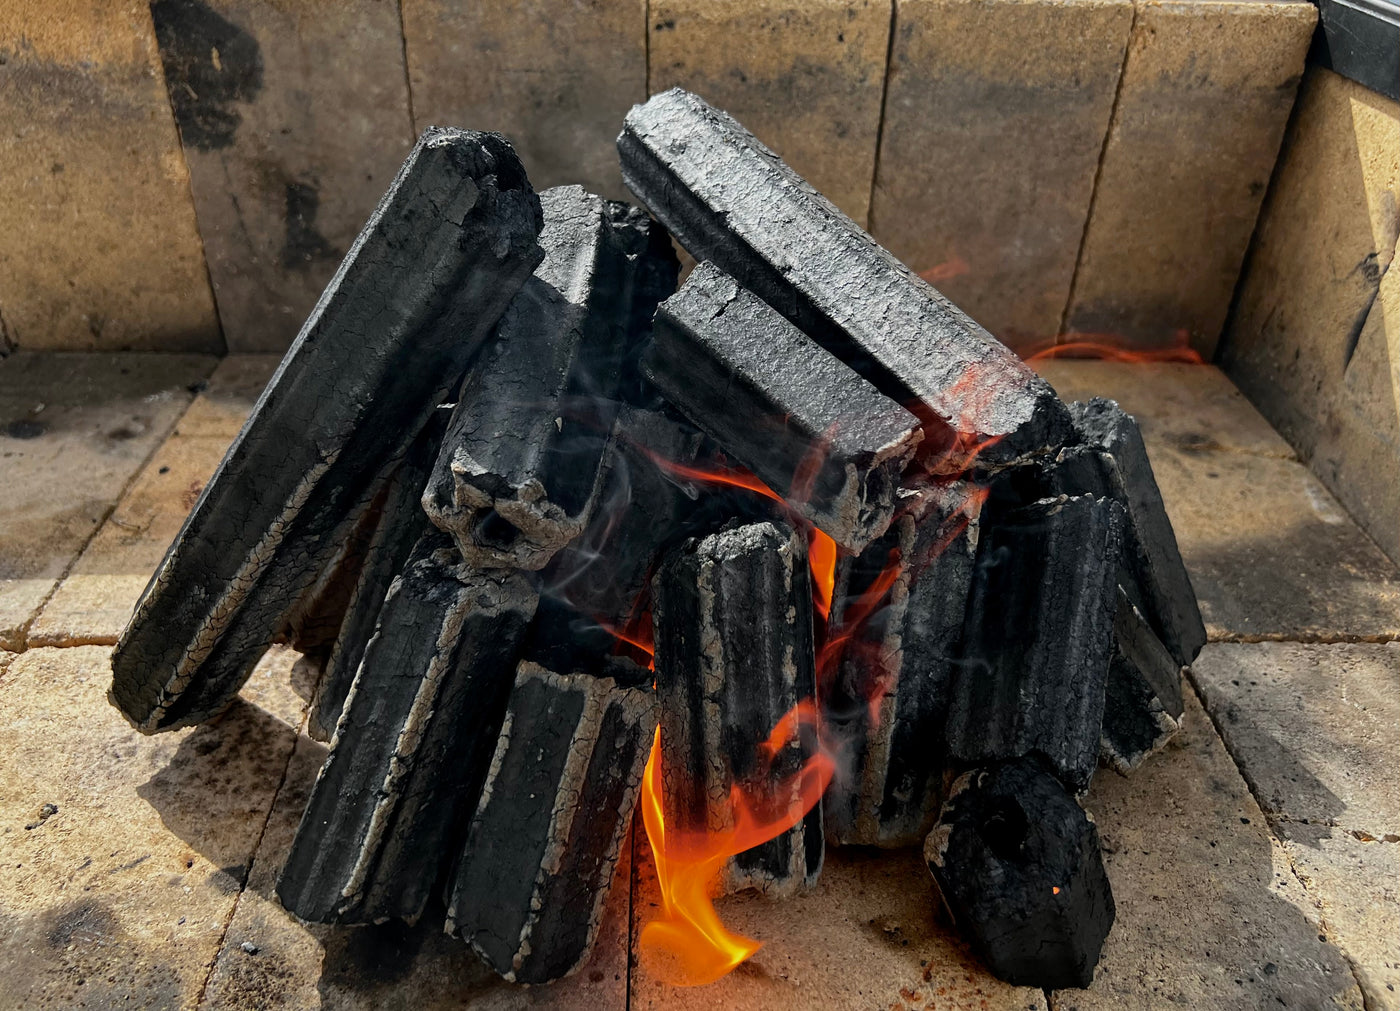 Natural compressed restaurant grade charcoal briquettes 10kg Box - Globaltic